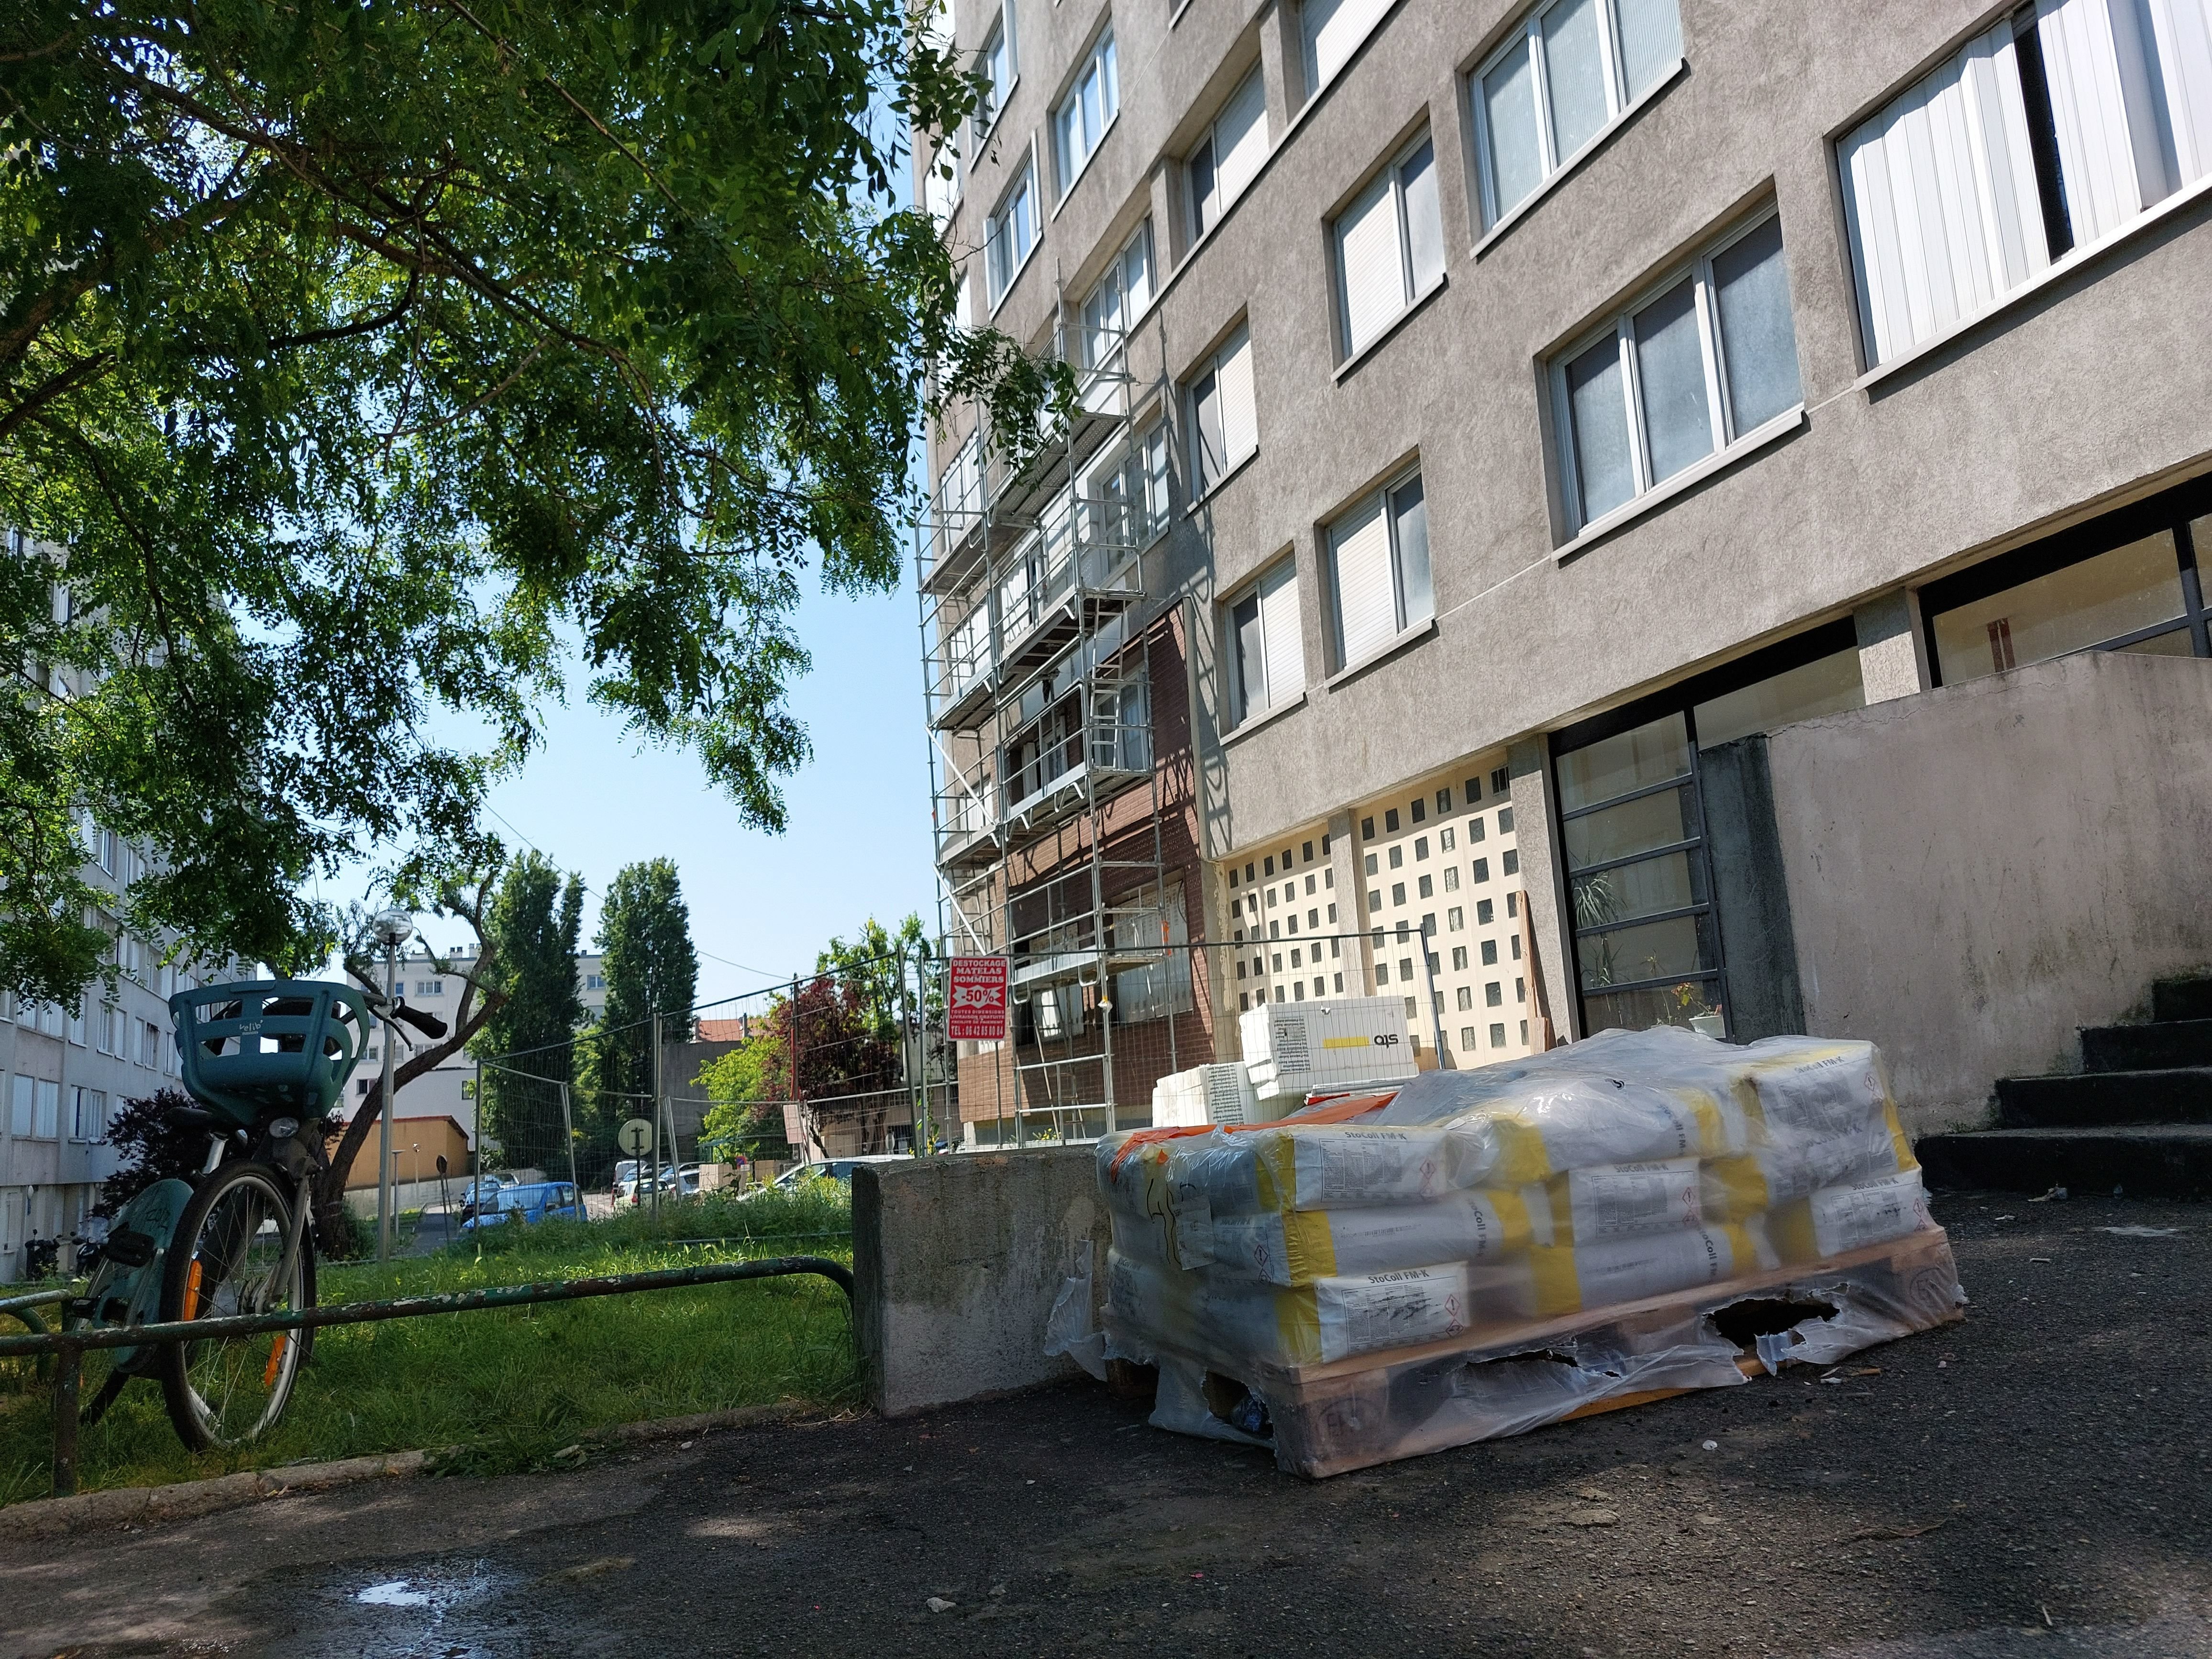 Montreuil (Seine-Saint-Denis), ce mardi. Les échafaudages sans ouvriers et les sacs de matériel à l'abandon en pied d'immeuble témoignent de l'arrêt momentané du chantier. LP/E.M.